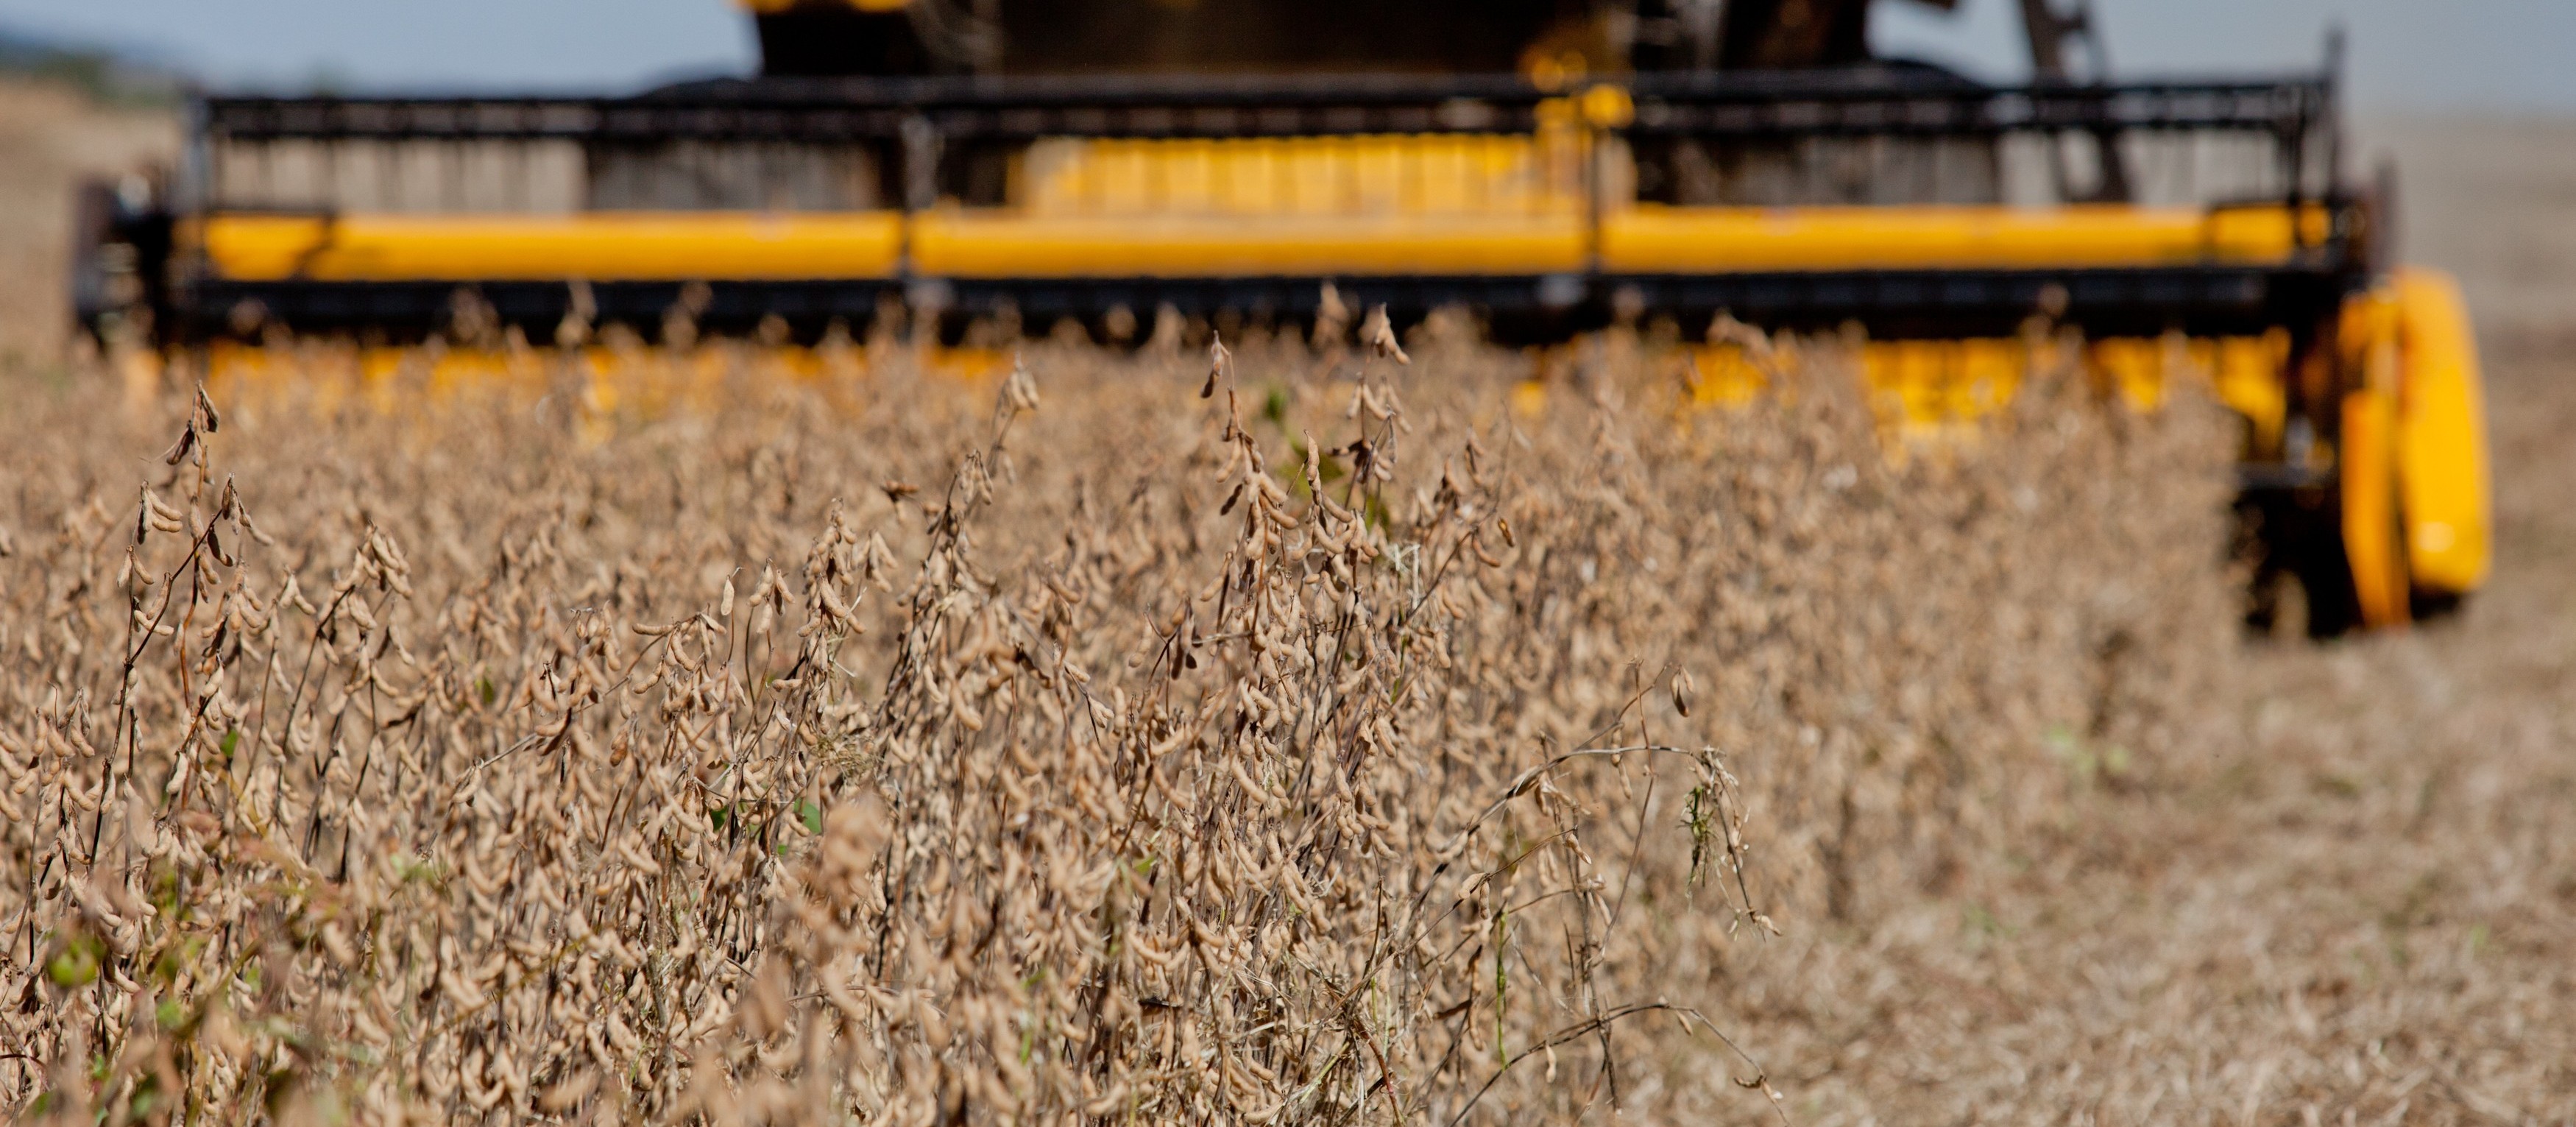 Safra de soja dos EUA em 2019/20 é estimada em 3,6 bilhões de bushels